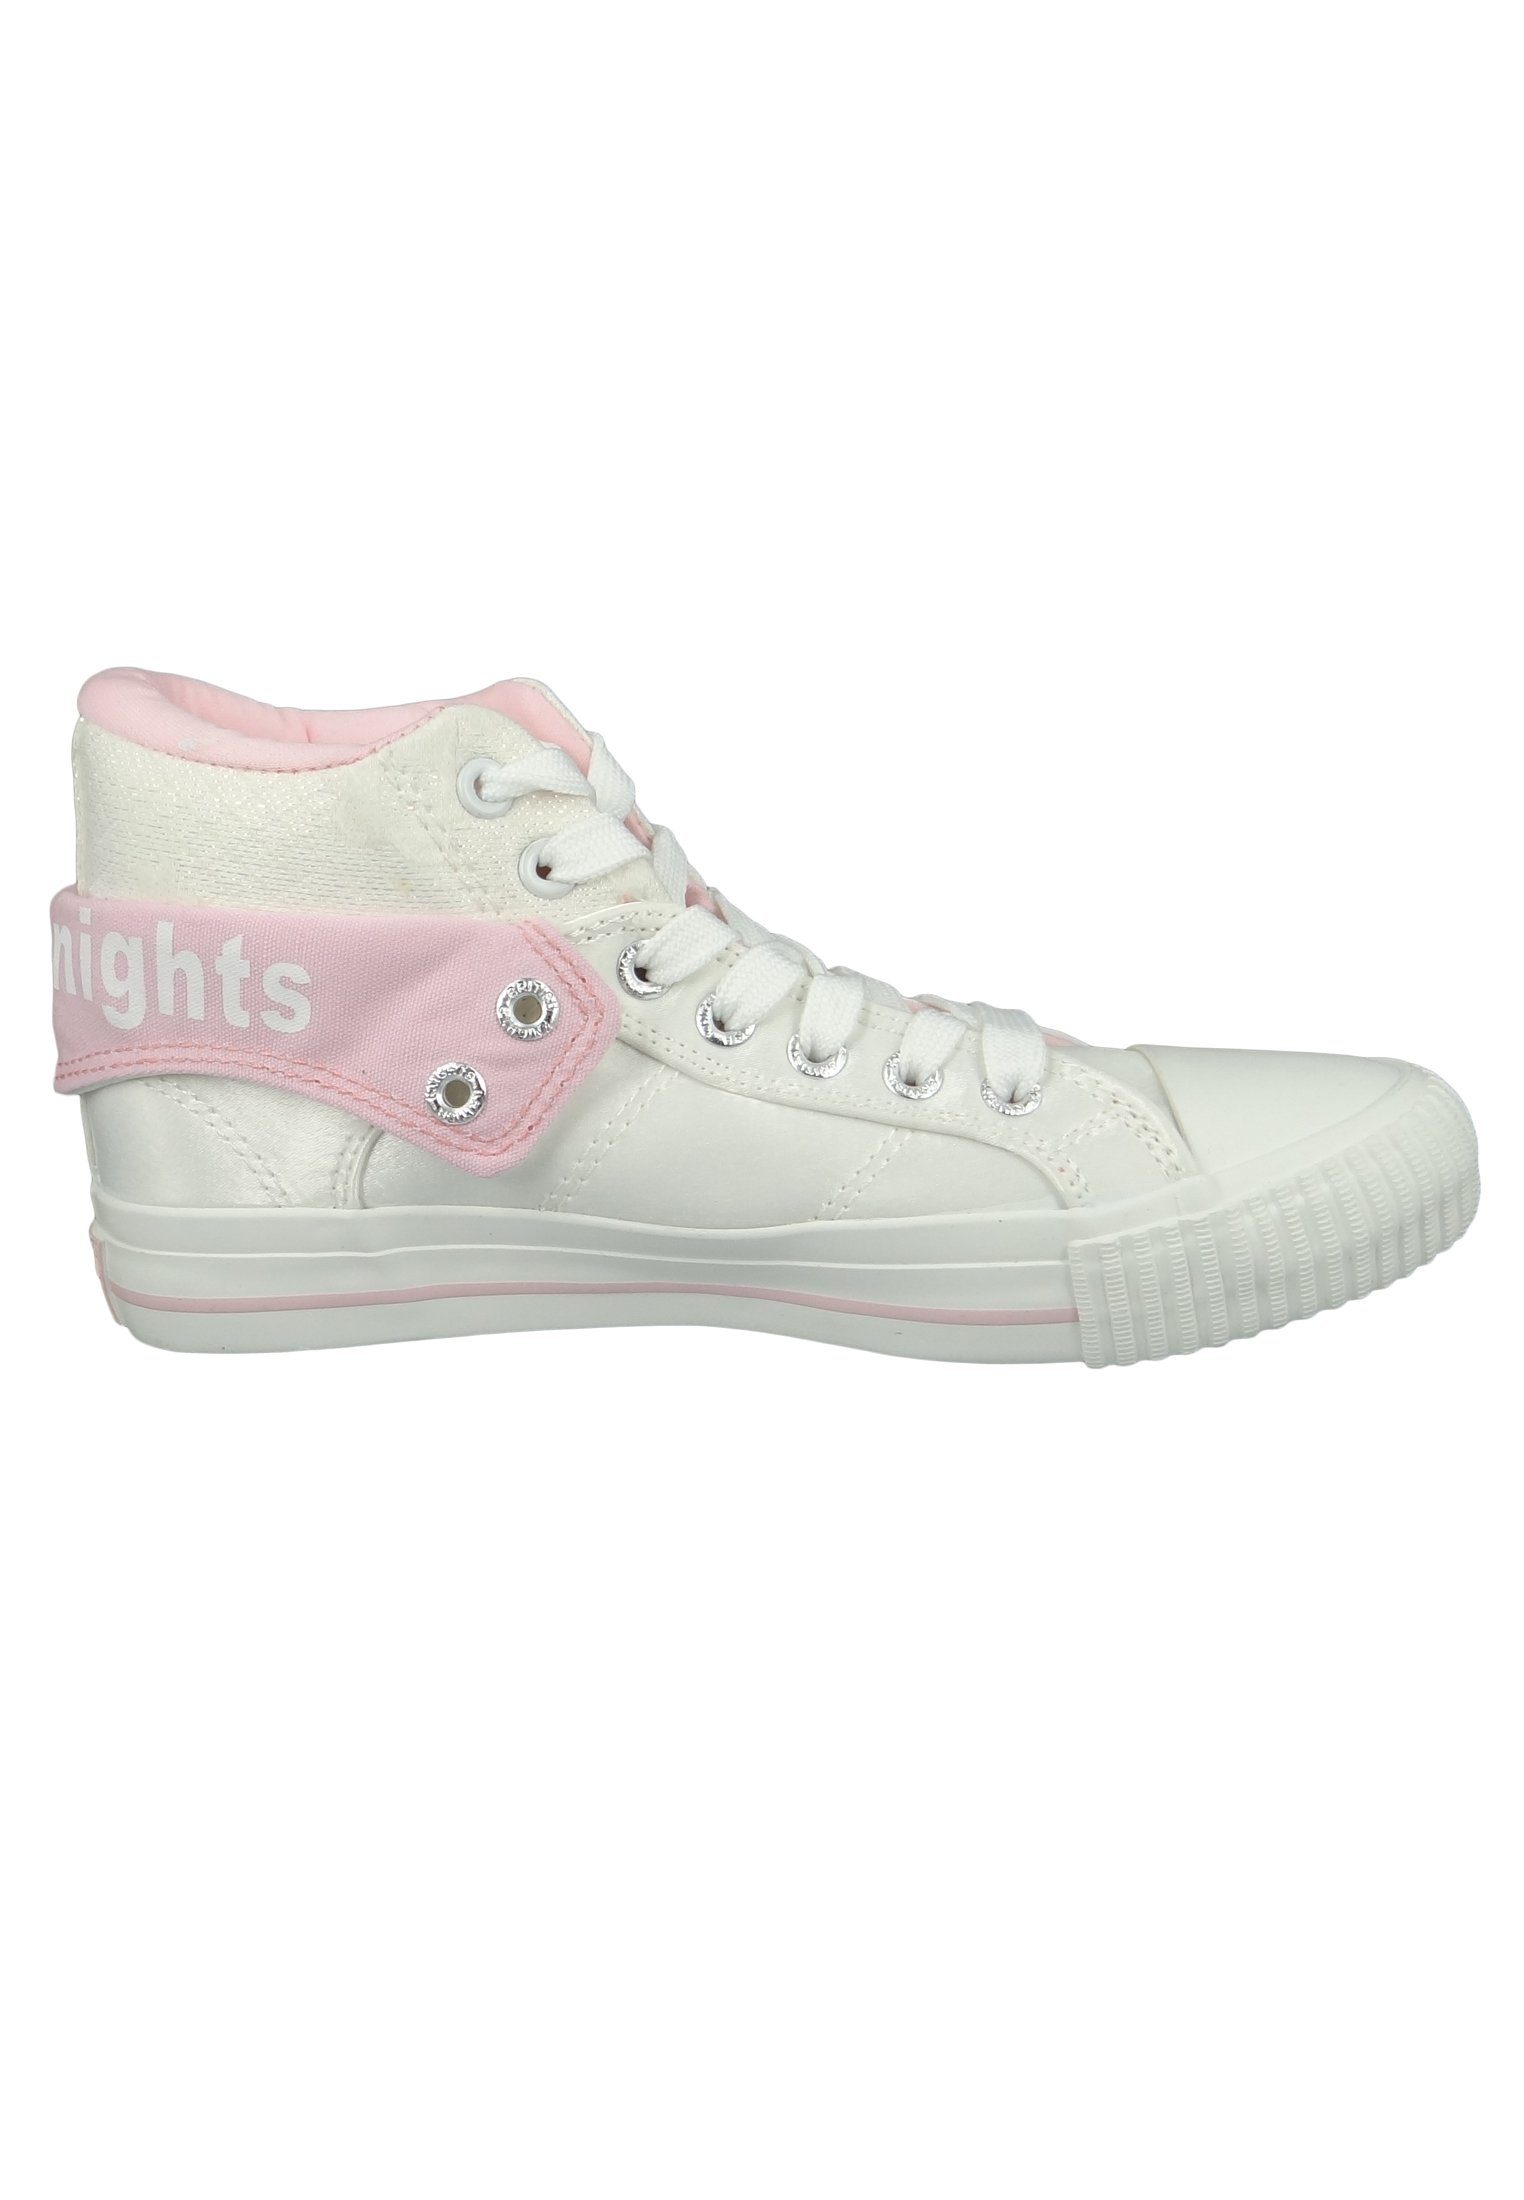 British Knights Pink White Flower B43-3709-02 Roco Sneaker